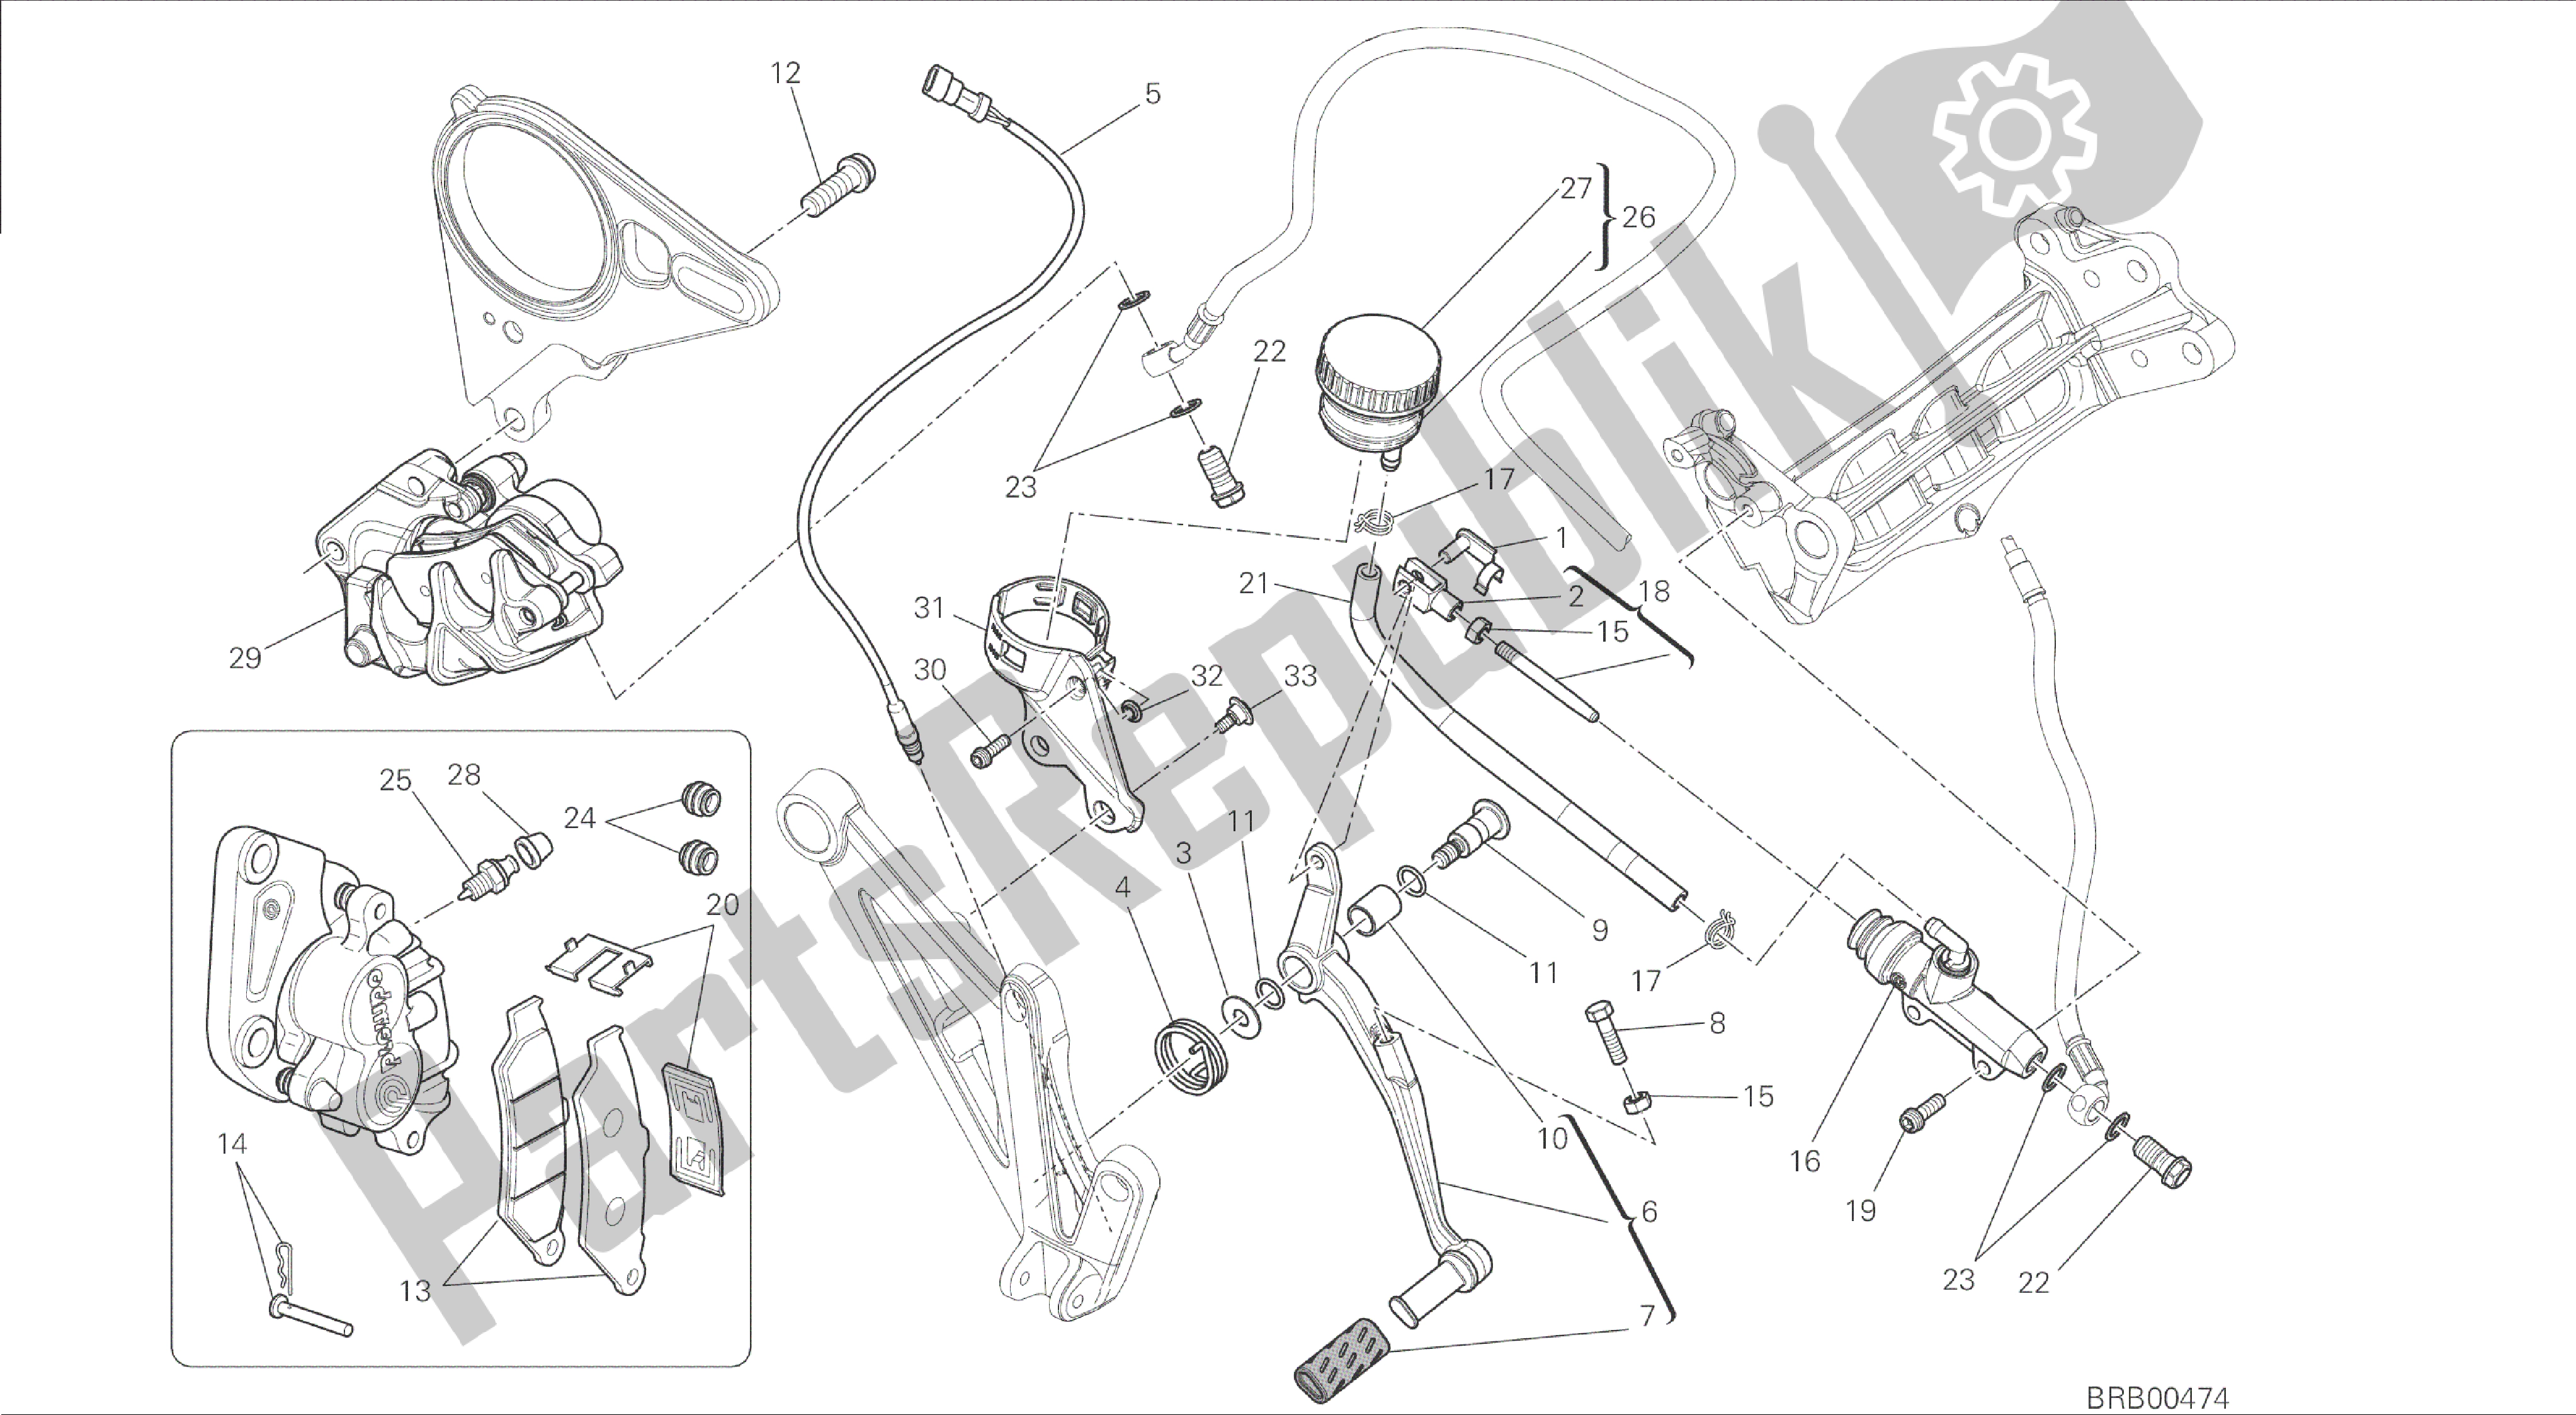 Todas las partes para Dibujo 025 - Bastidor Del Grupo Del Sistema De Frenos Traseros [mod: Dvl] de Ducati Diavel 1200 2015